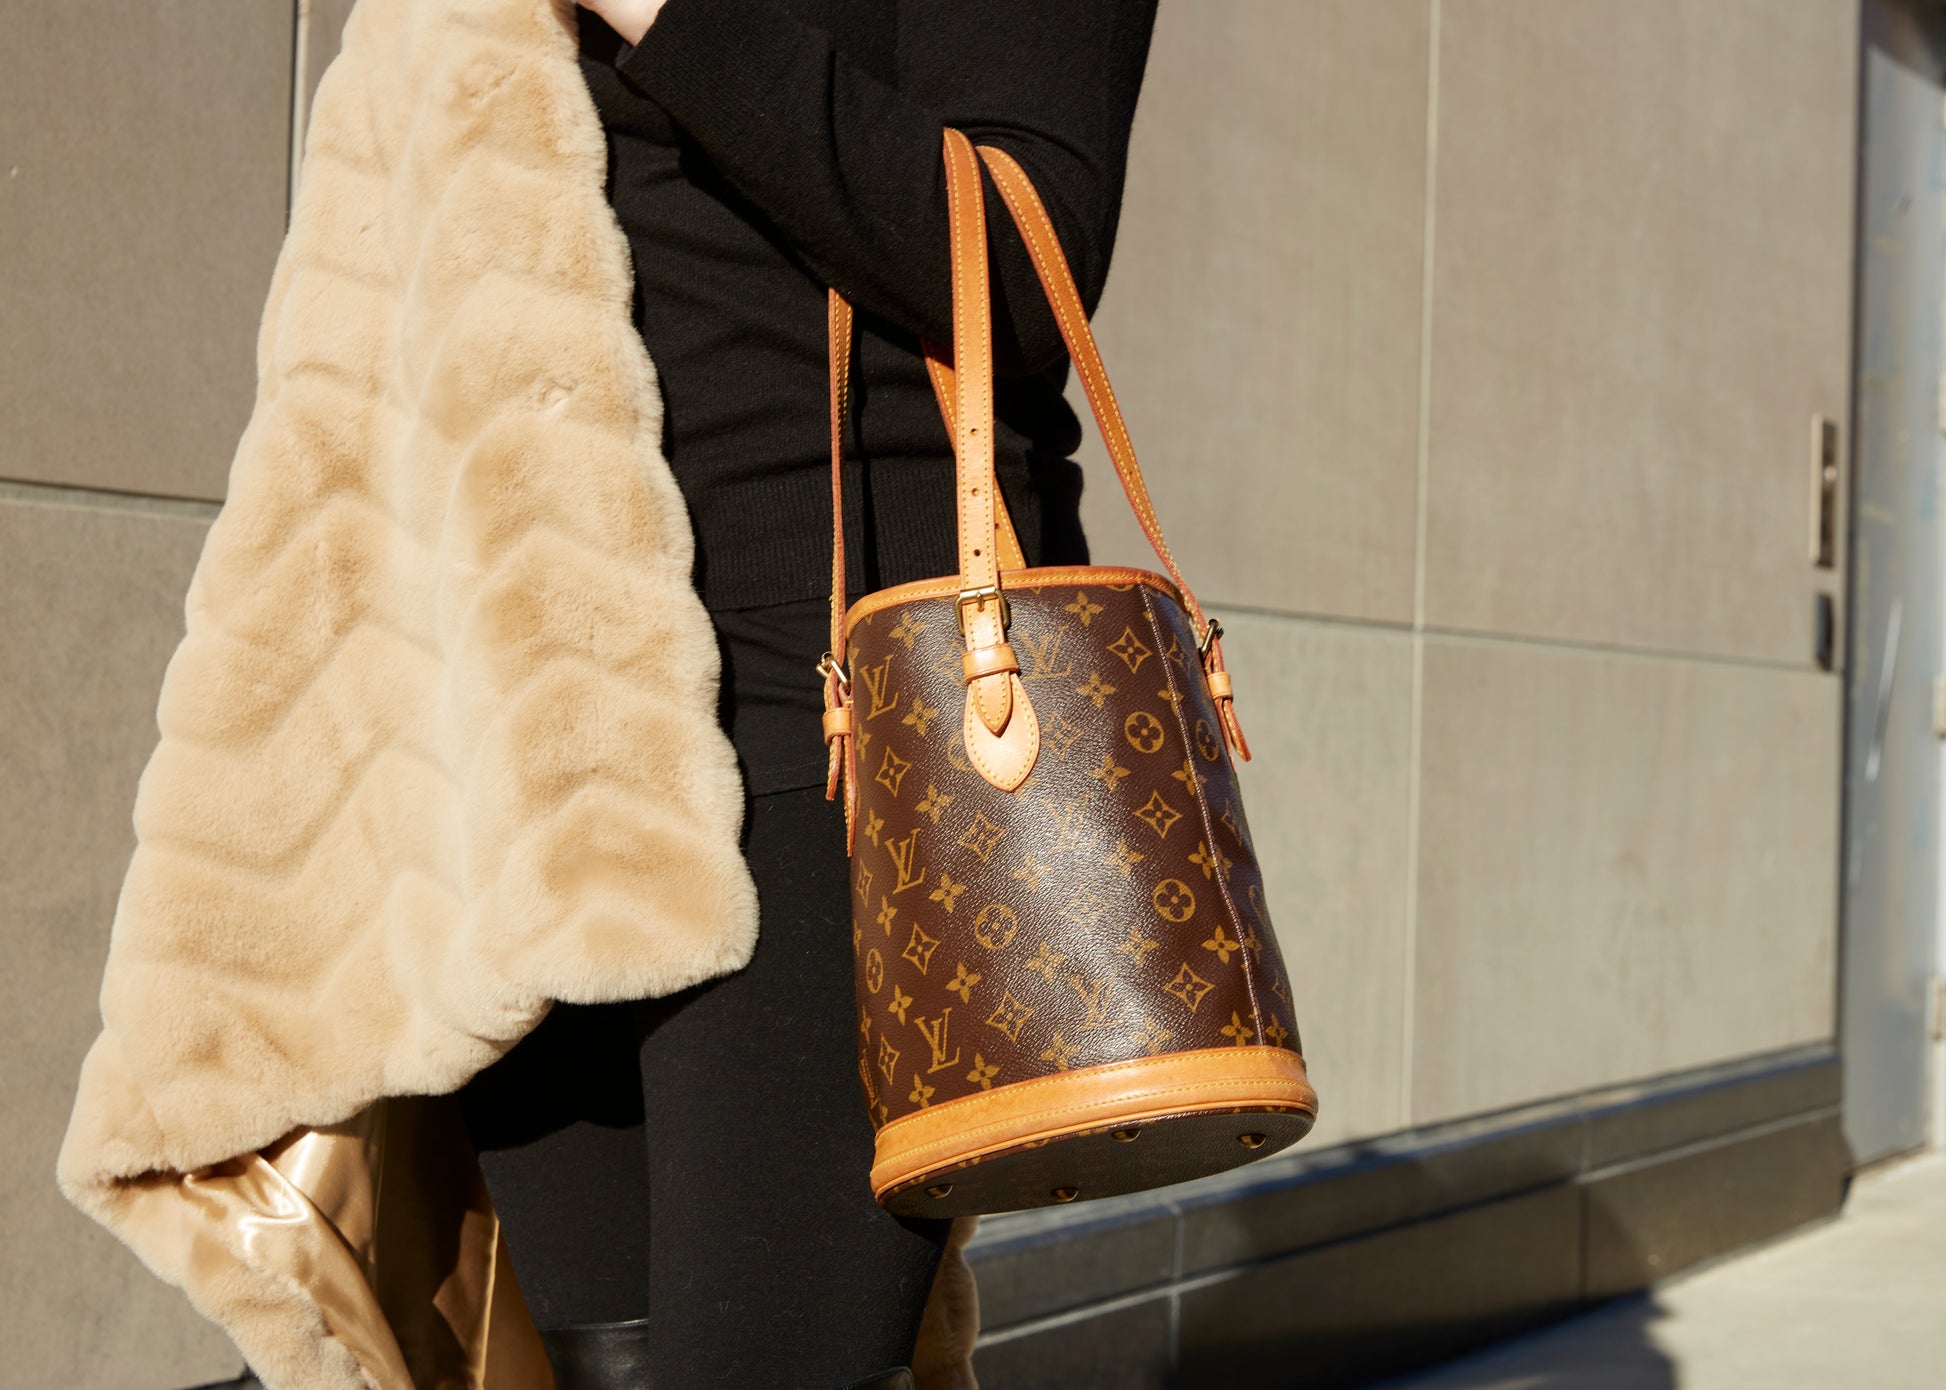 Louis Vuitton Petit Bucket NM Bag